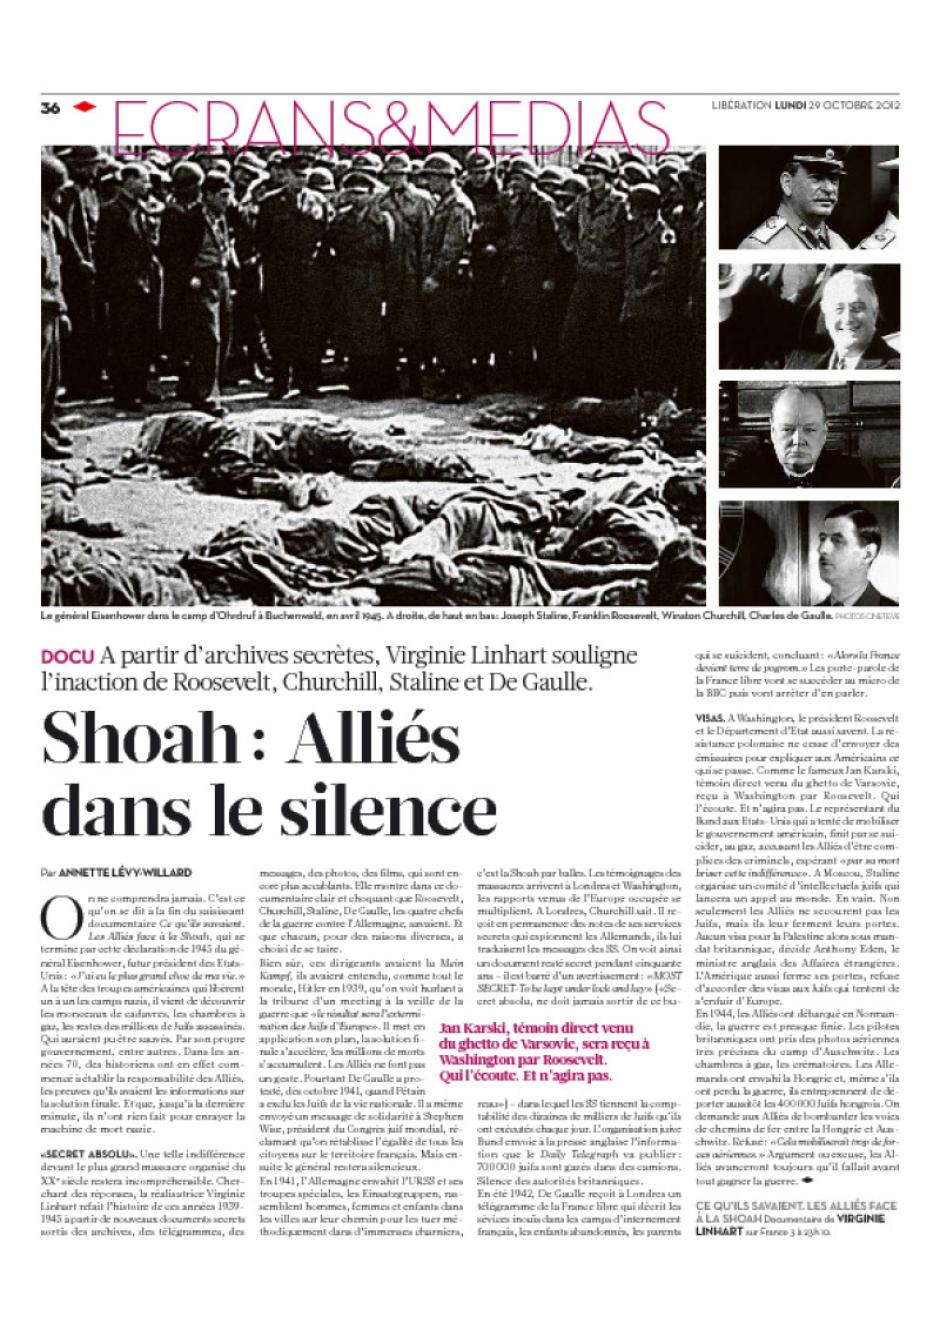 20121029-Libération-Shoah : Alliés dans le silence